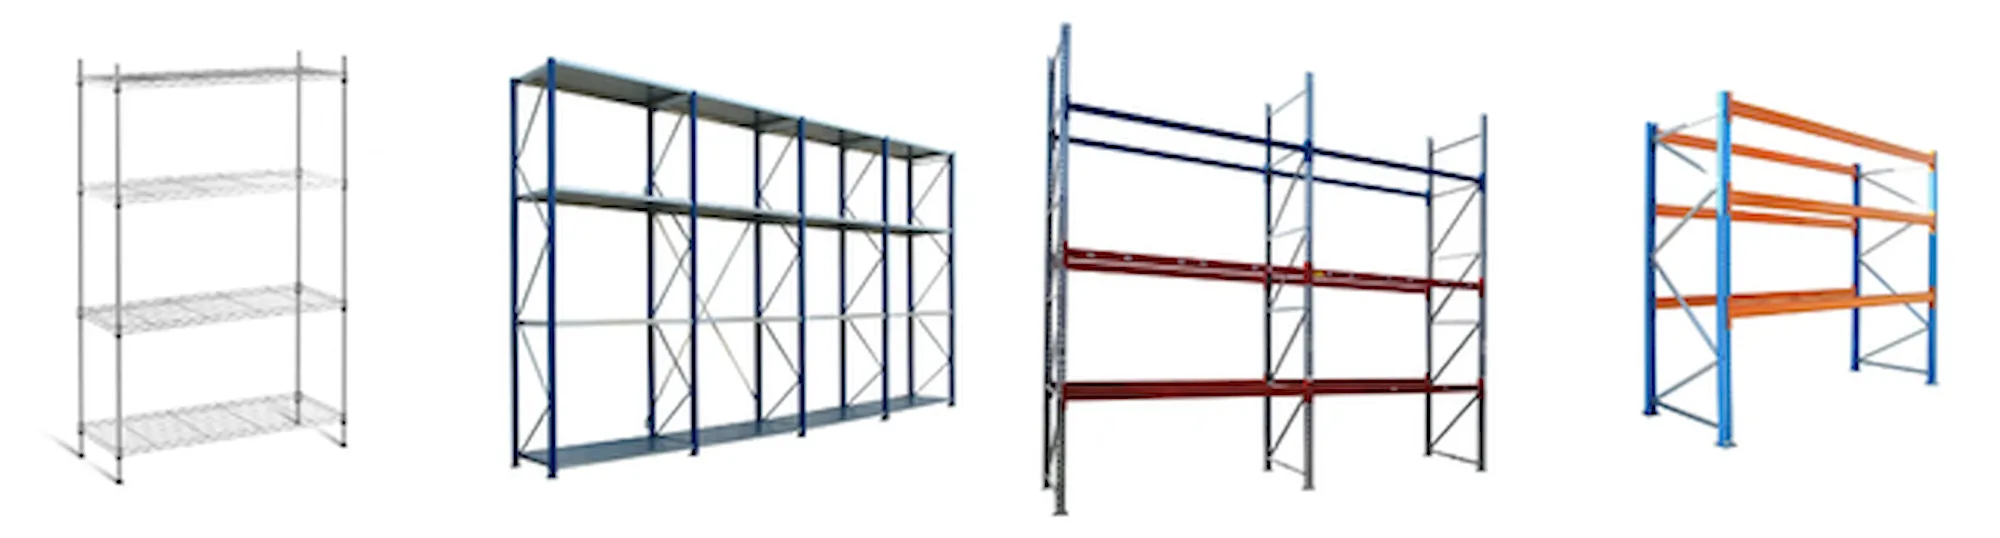 Пример конструкции стеллажей для помещения склада